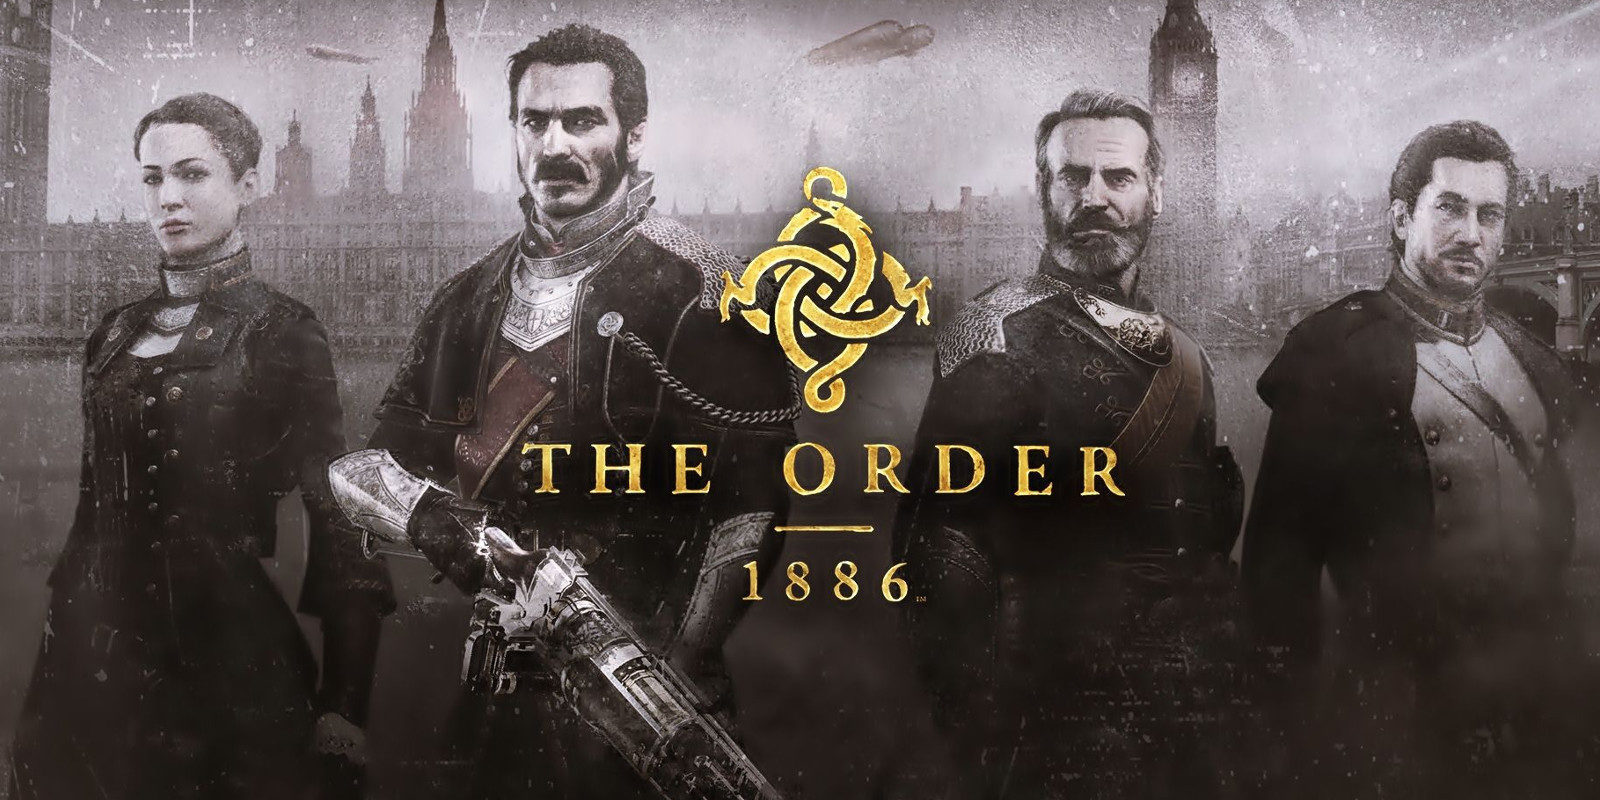 La semana que viene se anunciará lo nuevo de los creadores de 'The Order: 1886', publicado por Gamestop